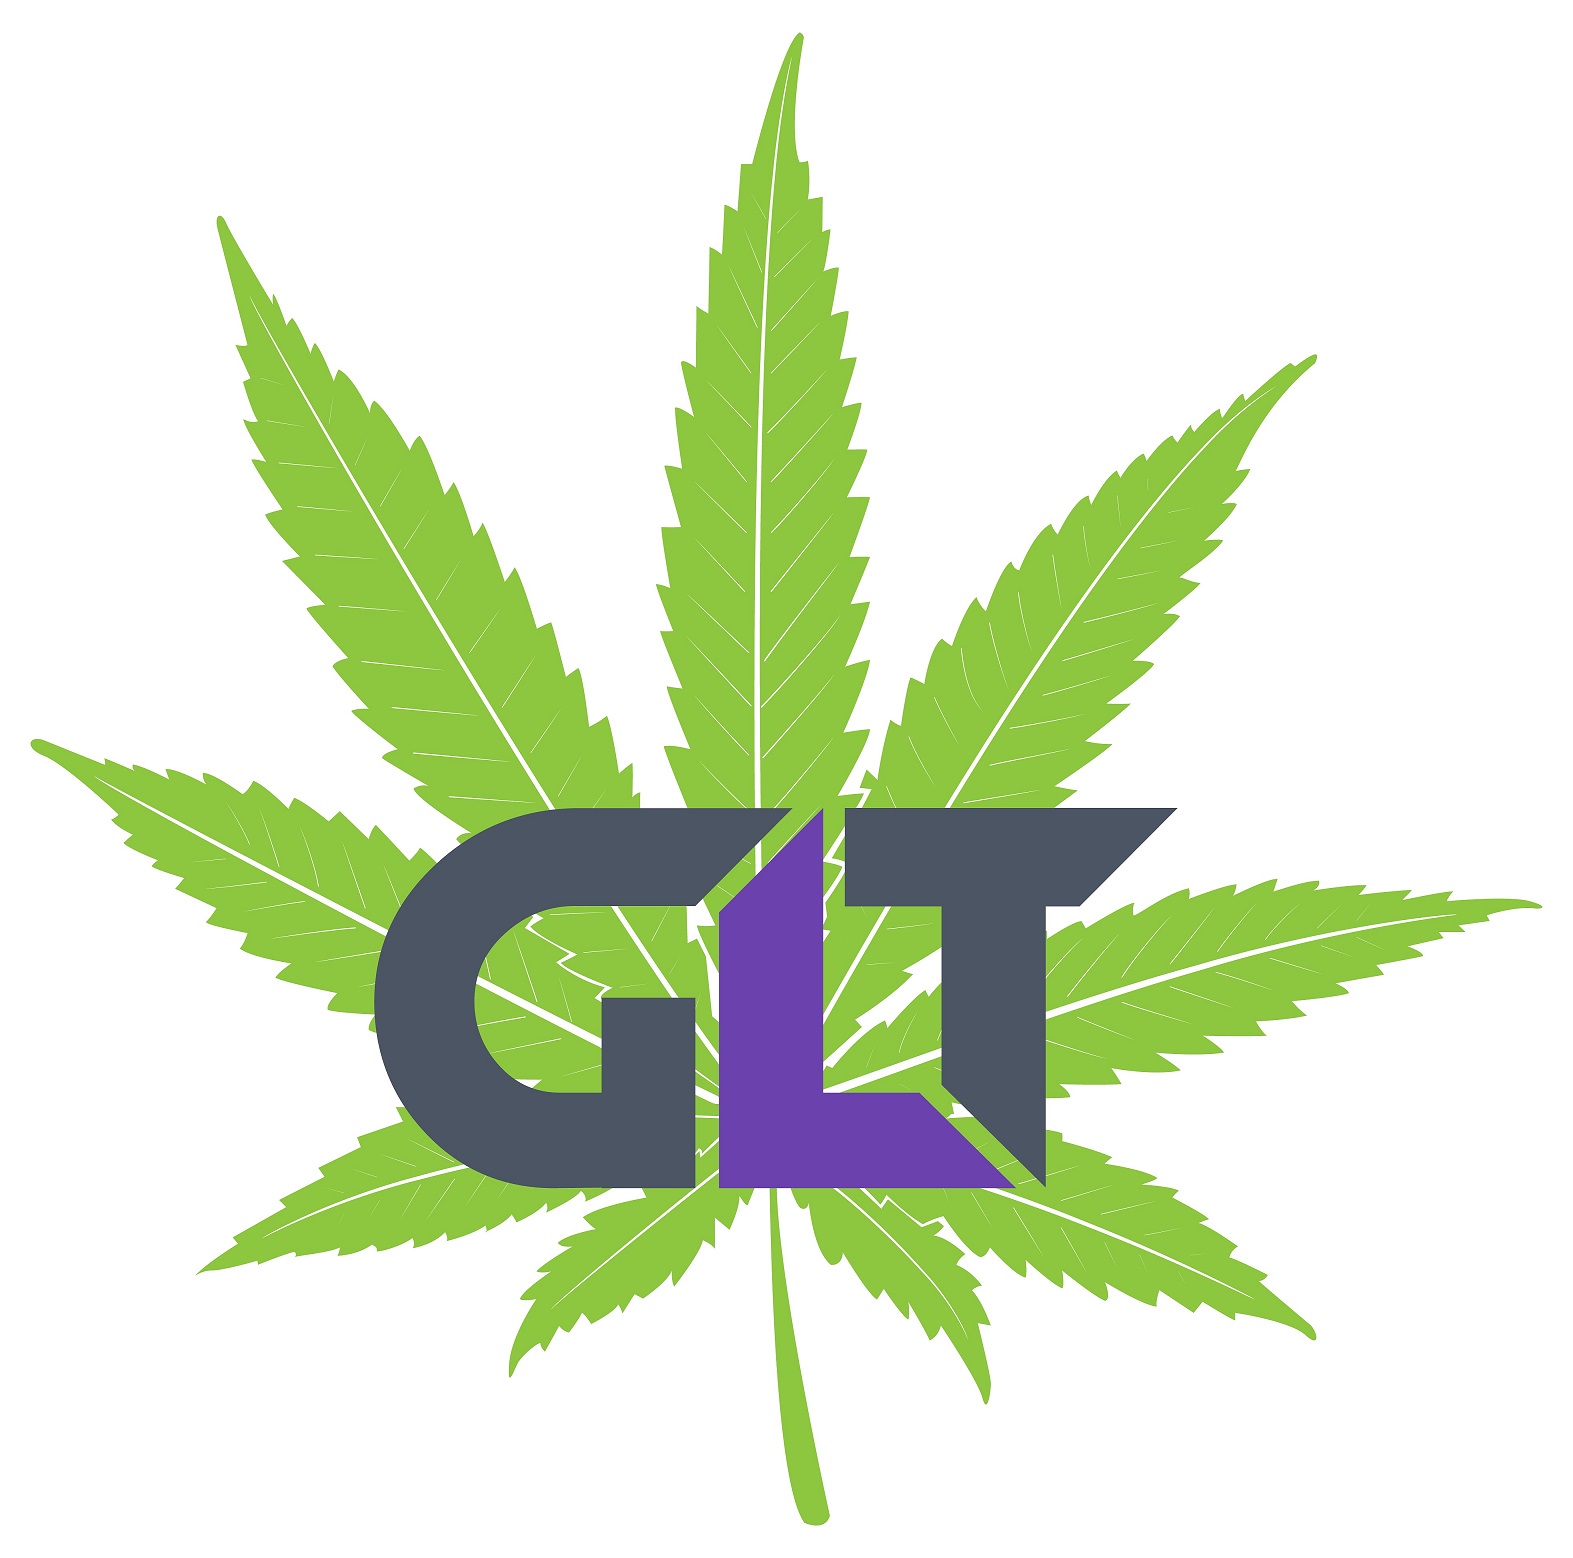 GLTNY - Green Leaf Technology, Inc.